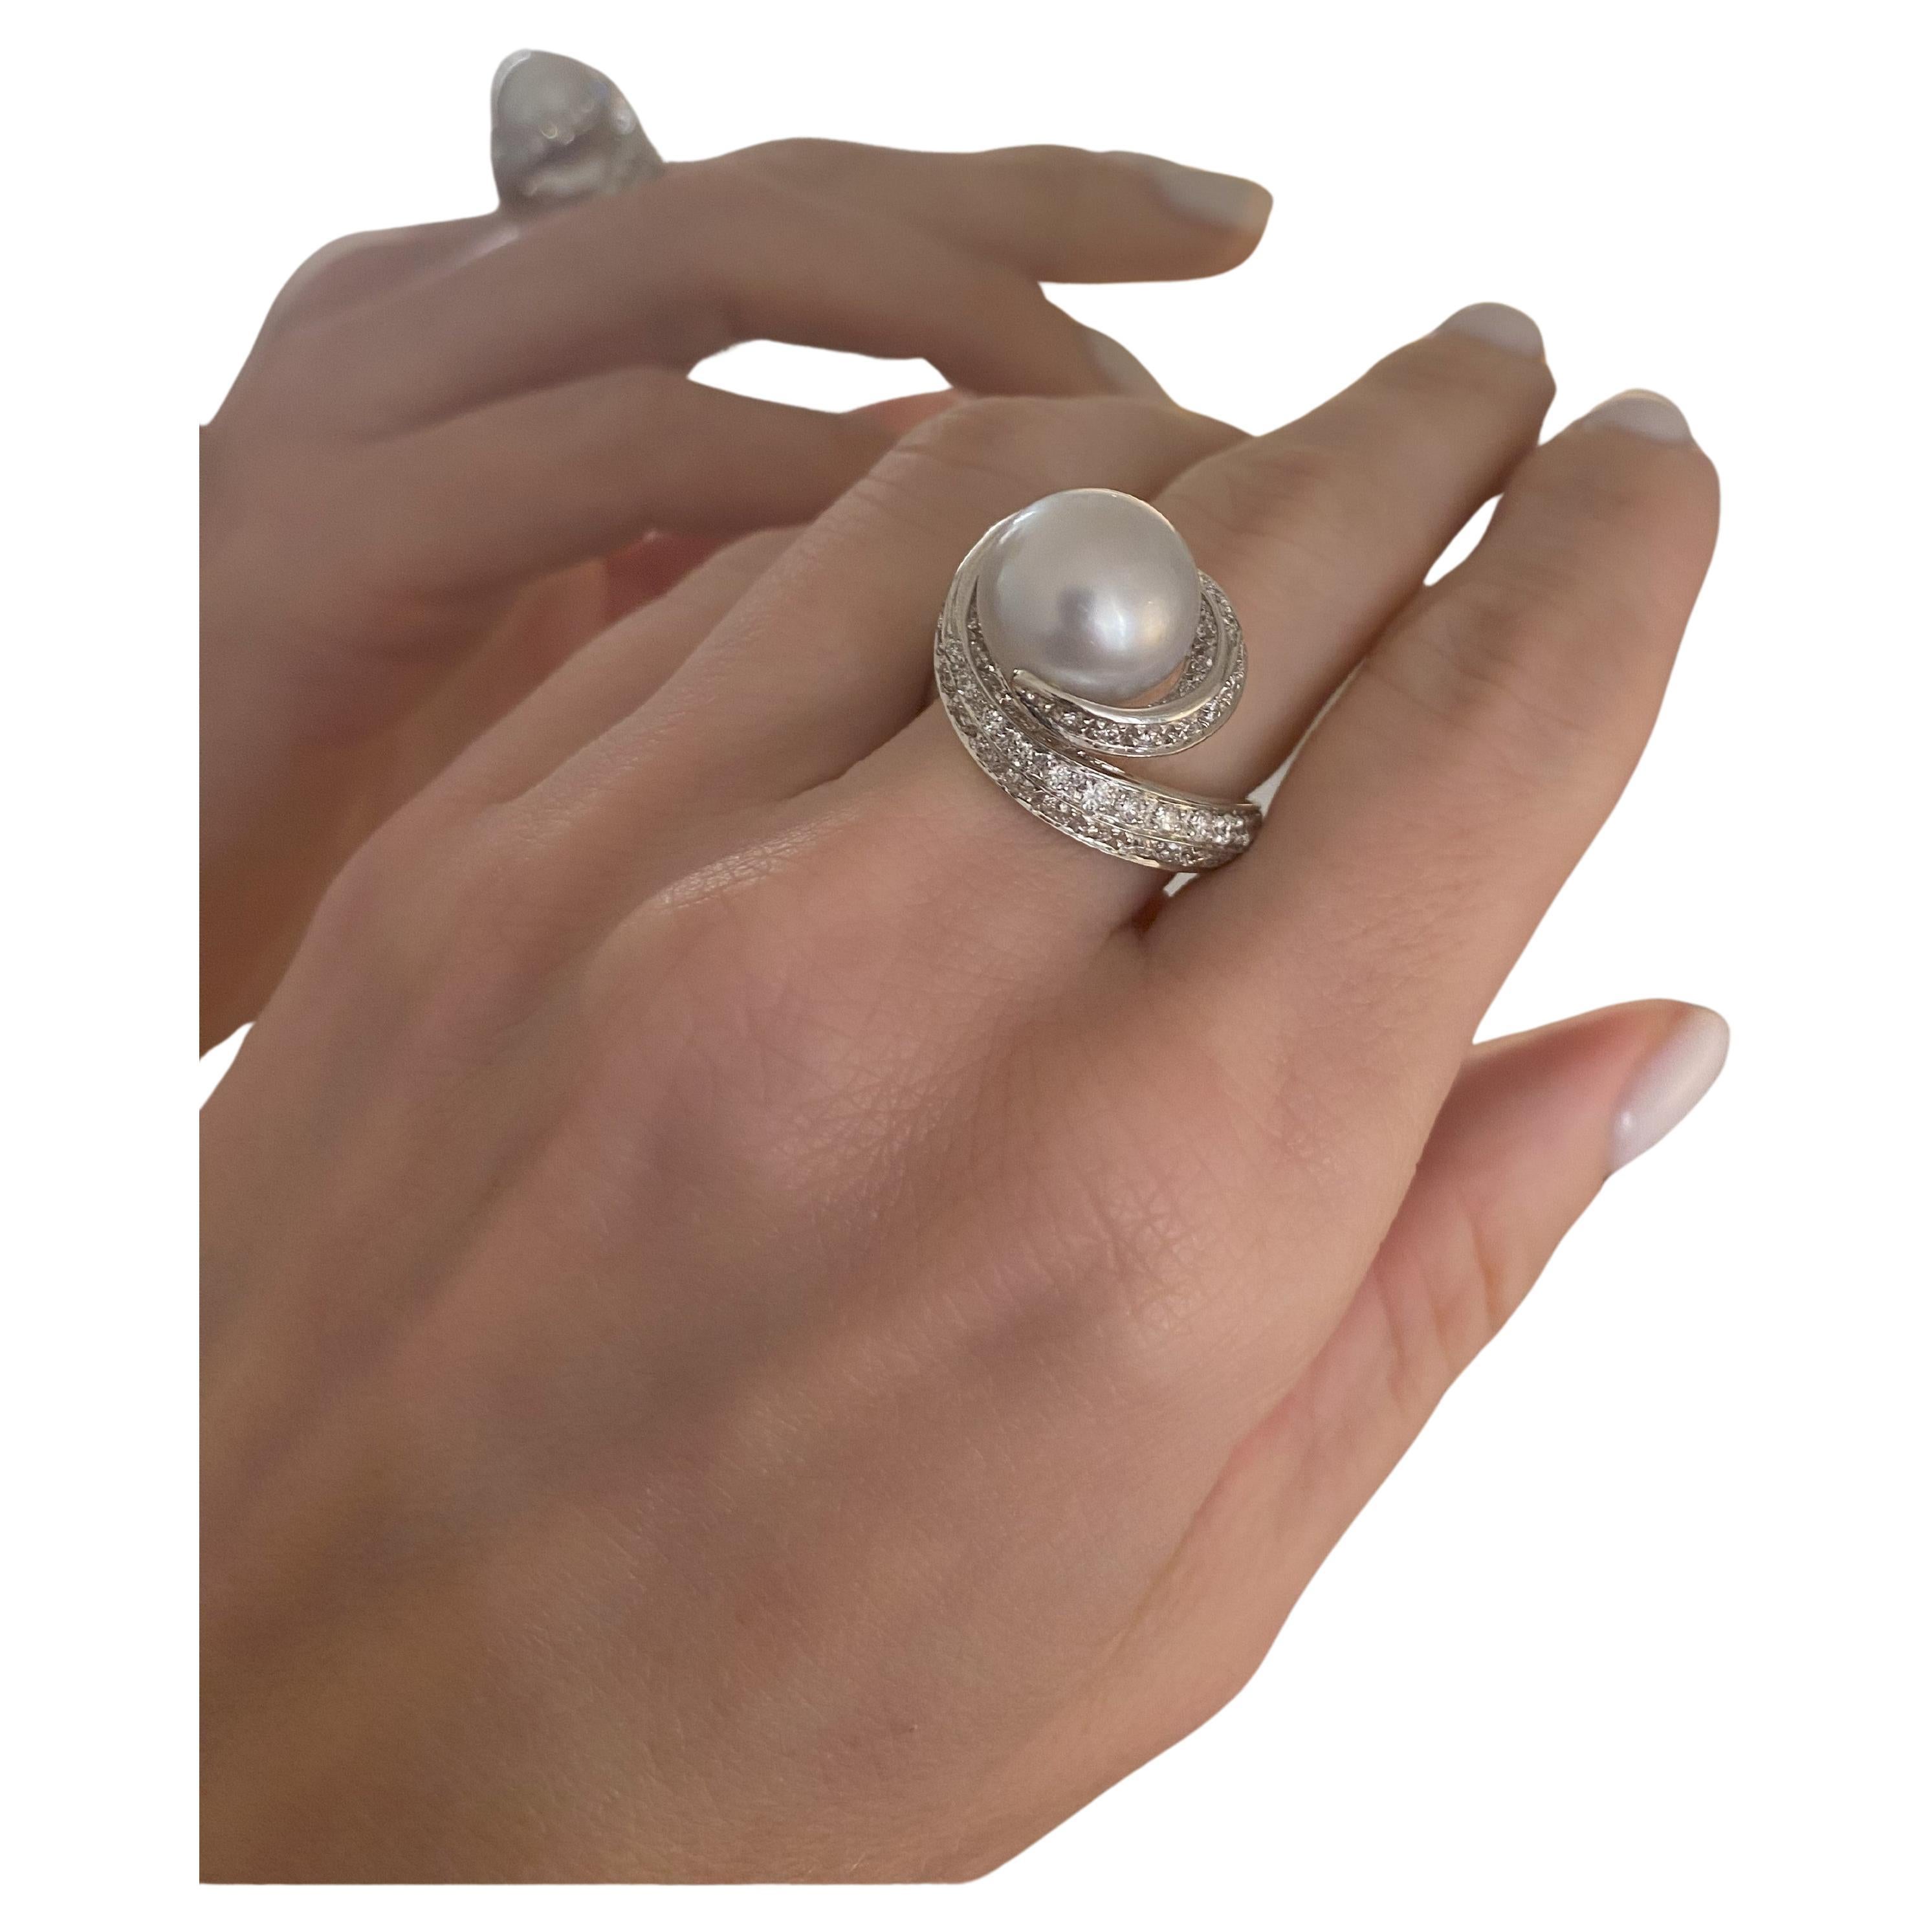 SCAVIA TWIST Ring 12.75 Ct Australian Silver/White Pearl Diamond Pavè White Gold